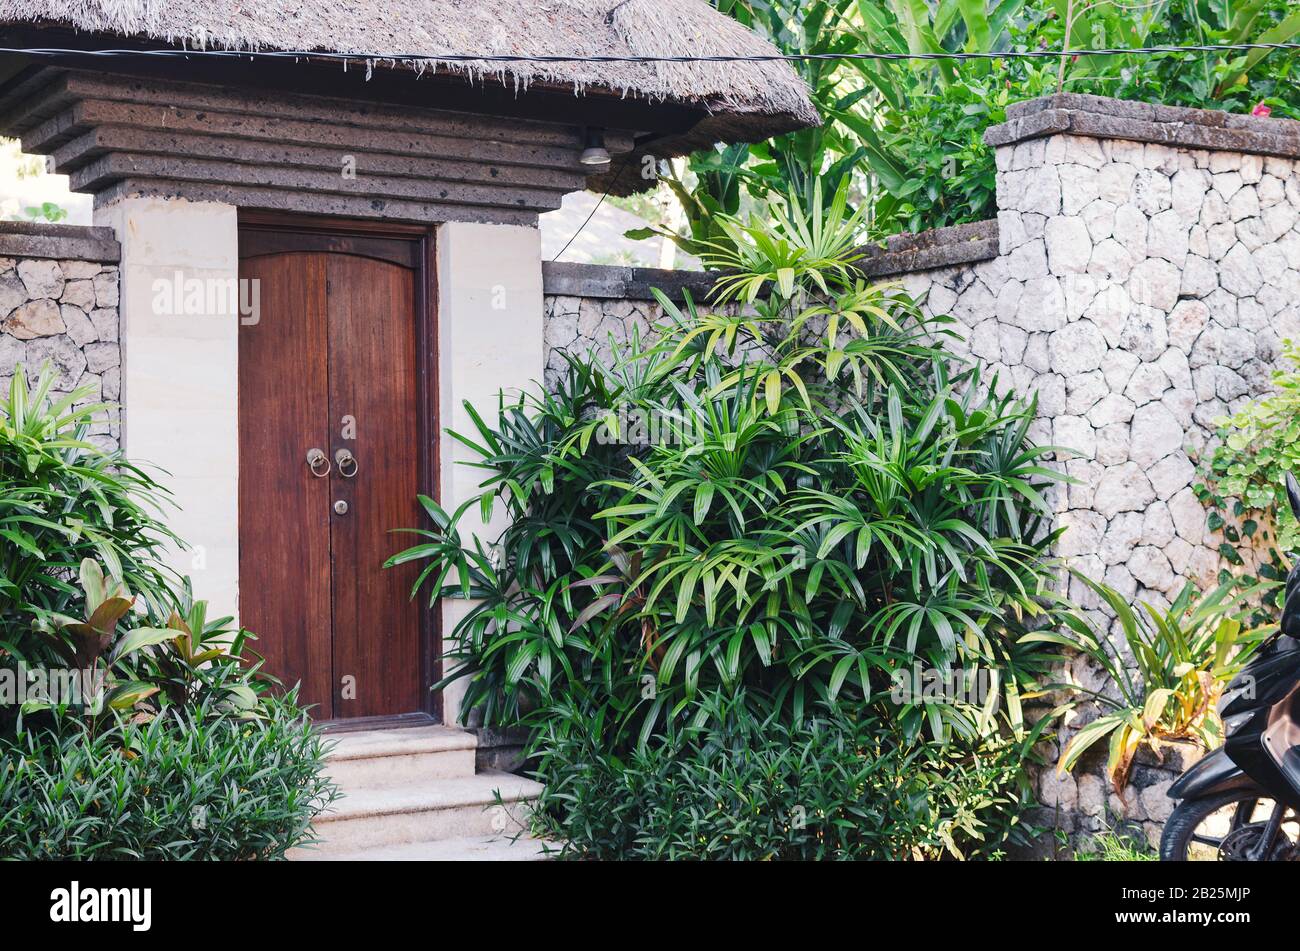 Blick auf die Haustür in einem von grünen Pflanzen umgebenen Steinzaun. Wohnvilla in den Tropen. Bali, Indonesien Stockfoto